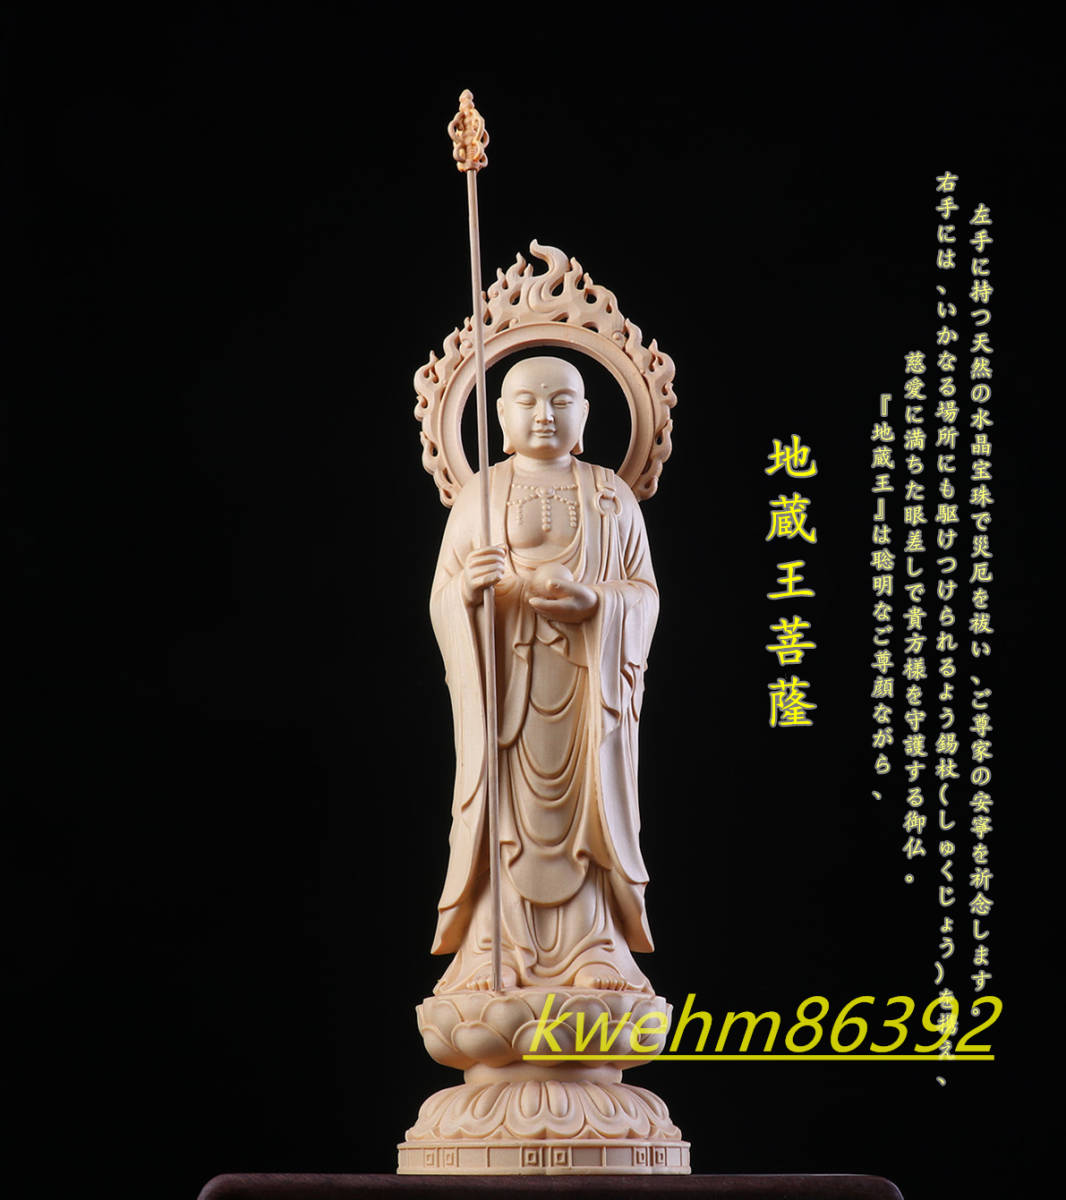 木彫り 仏像 地蔵王菩薩立像 彫刻 一刀彫 天然木檜材 仏師で仕上げ